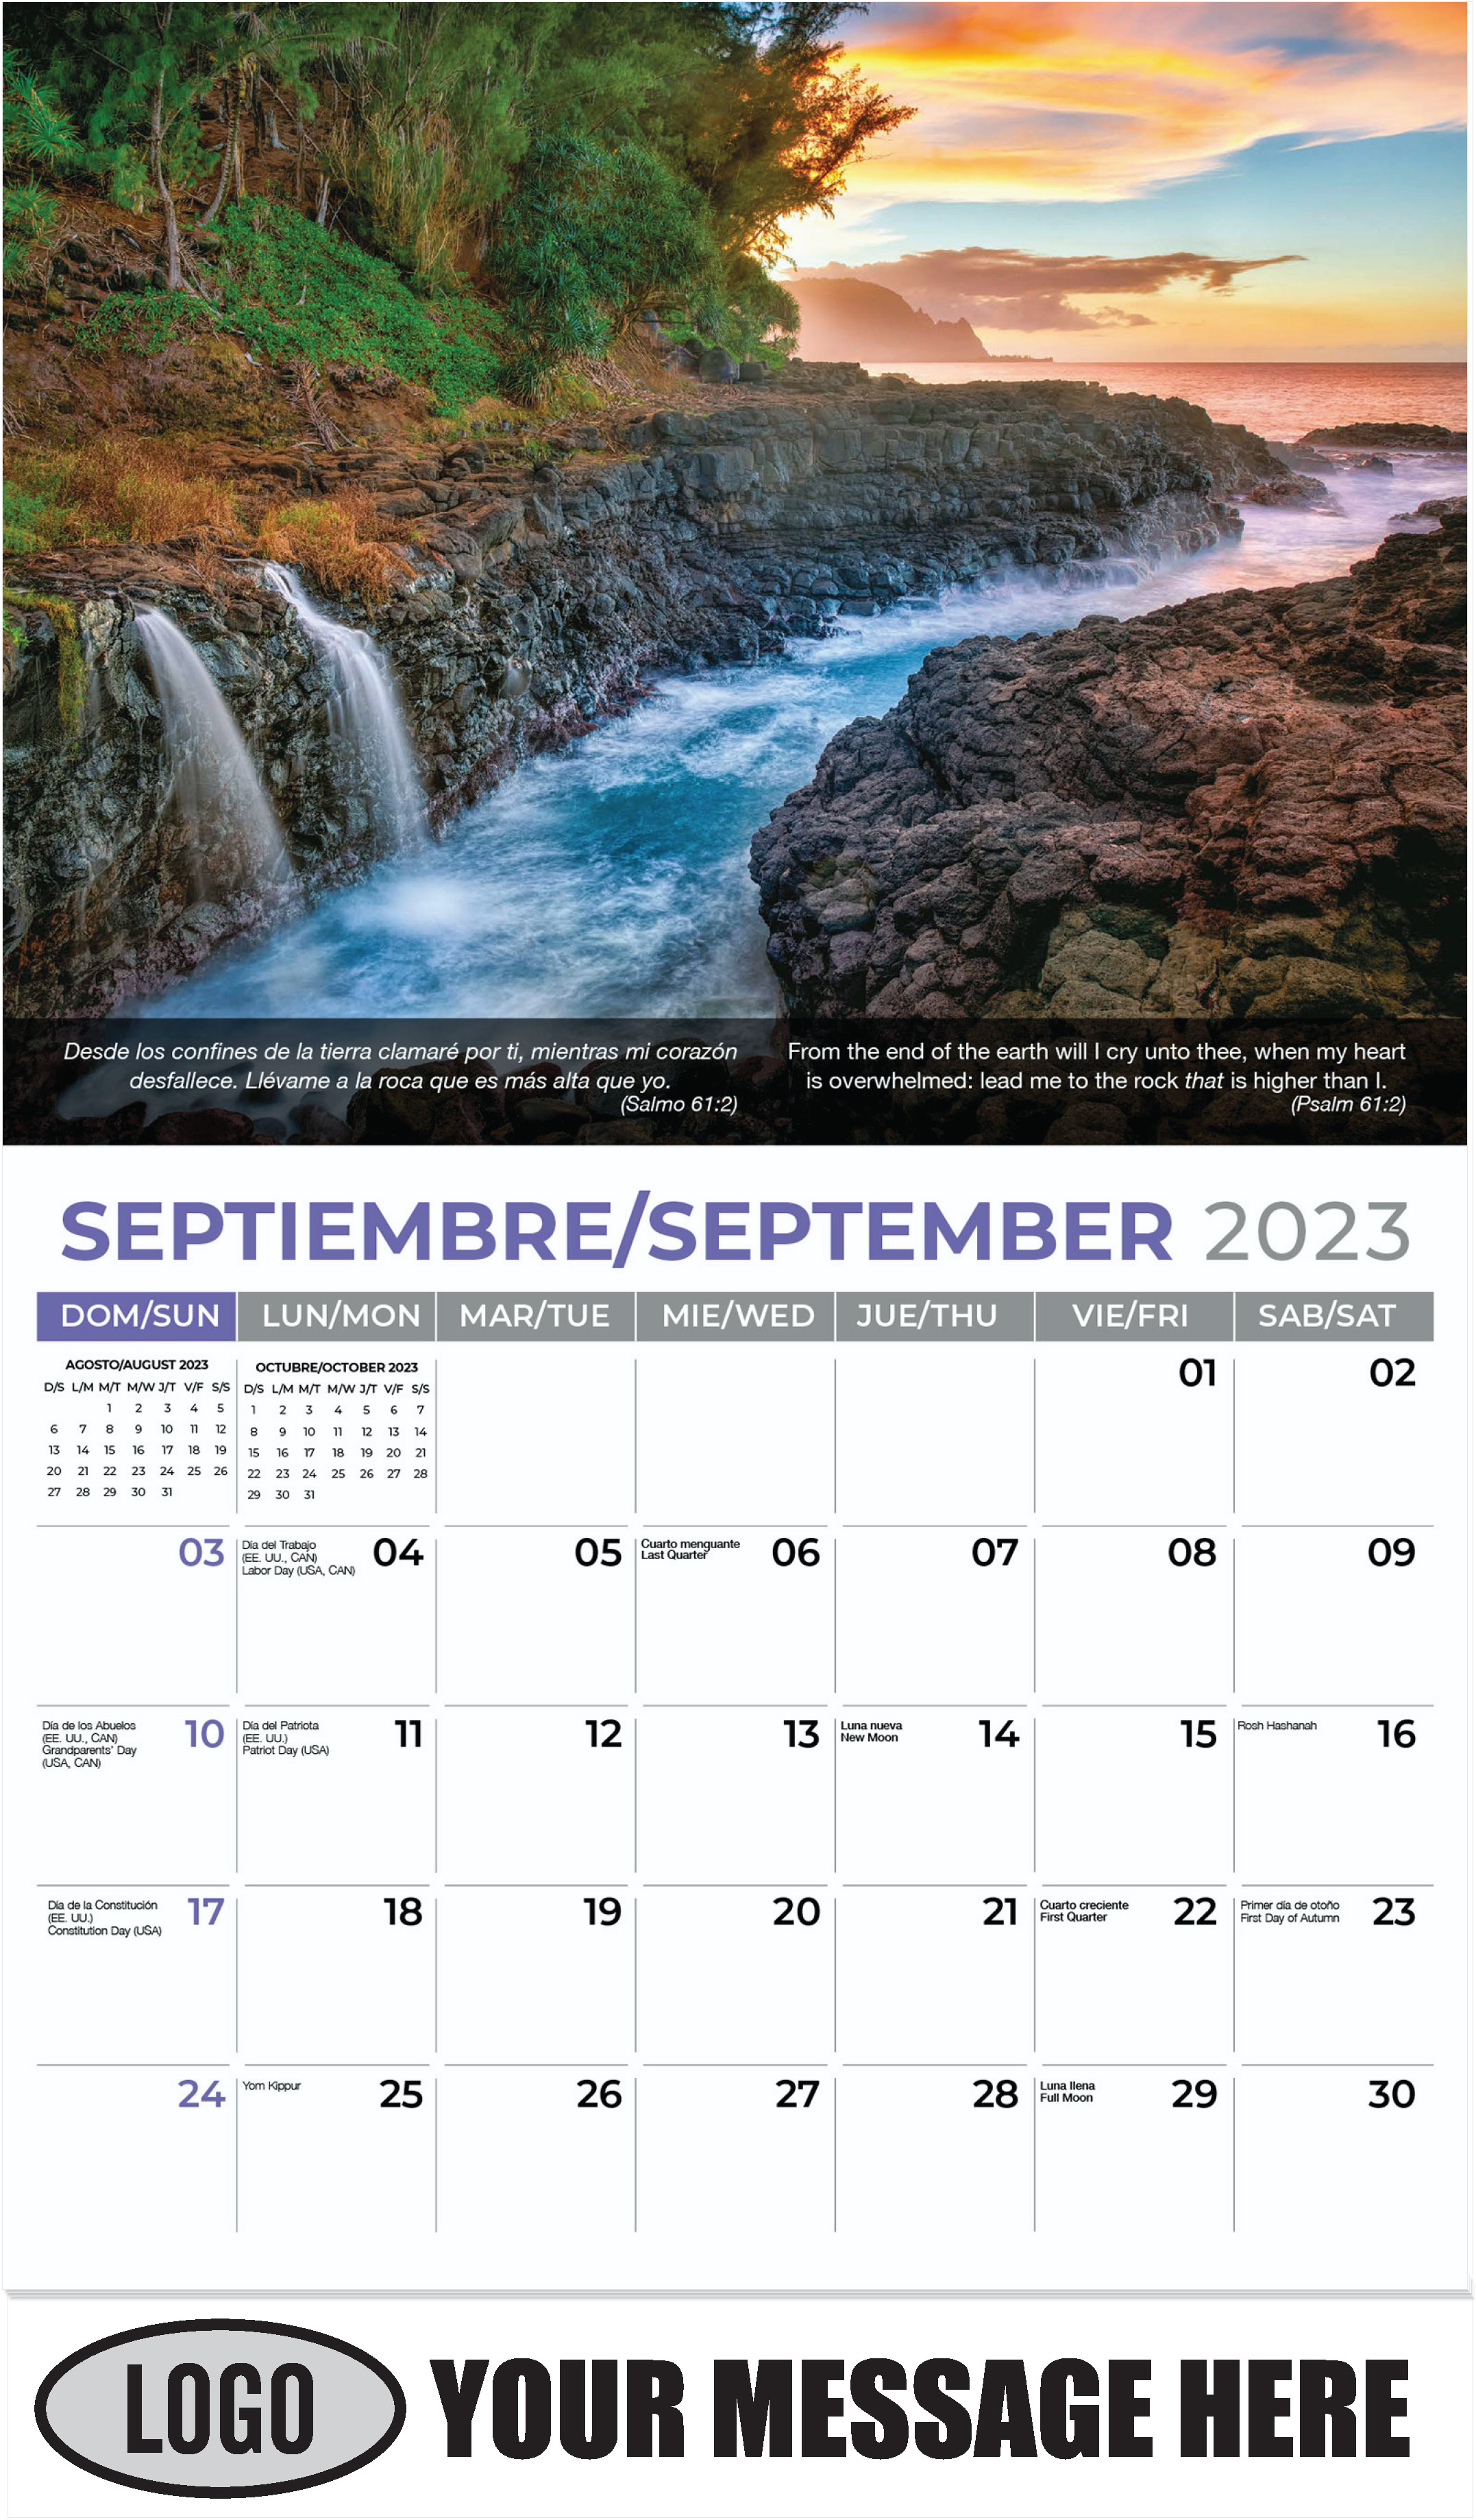 Queen's Bath Waterfalls. Kauai, Hawaii - September - Faith-Passages-Eng-Sp 2023 Promotional Calendar